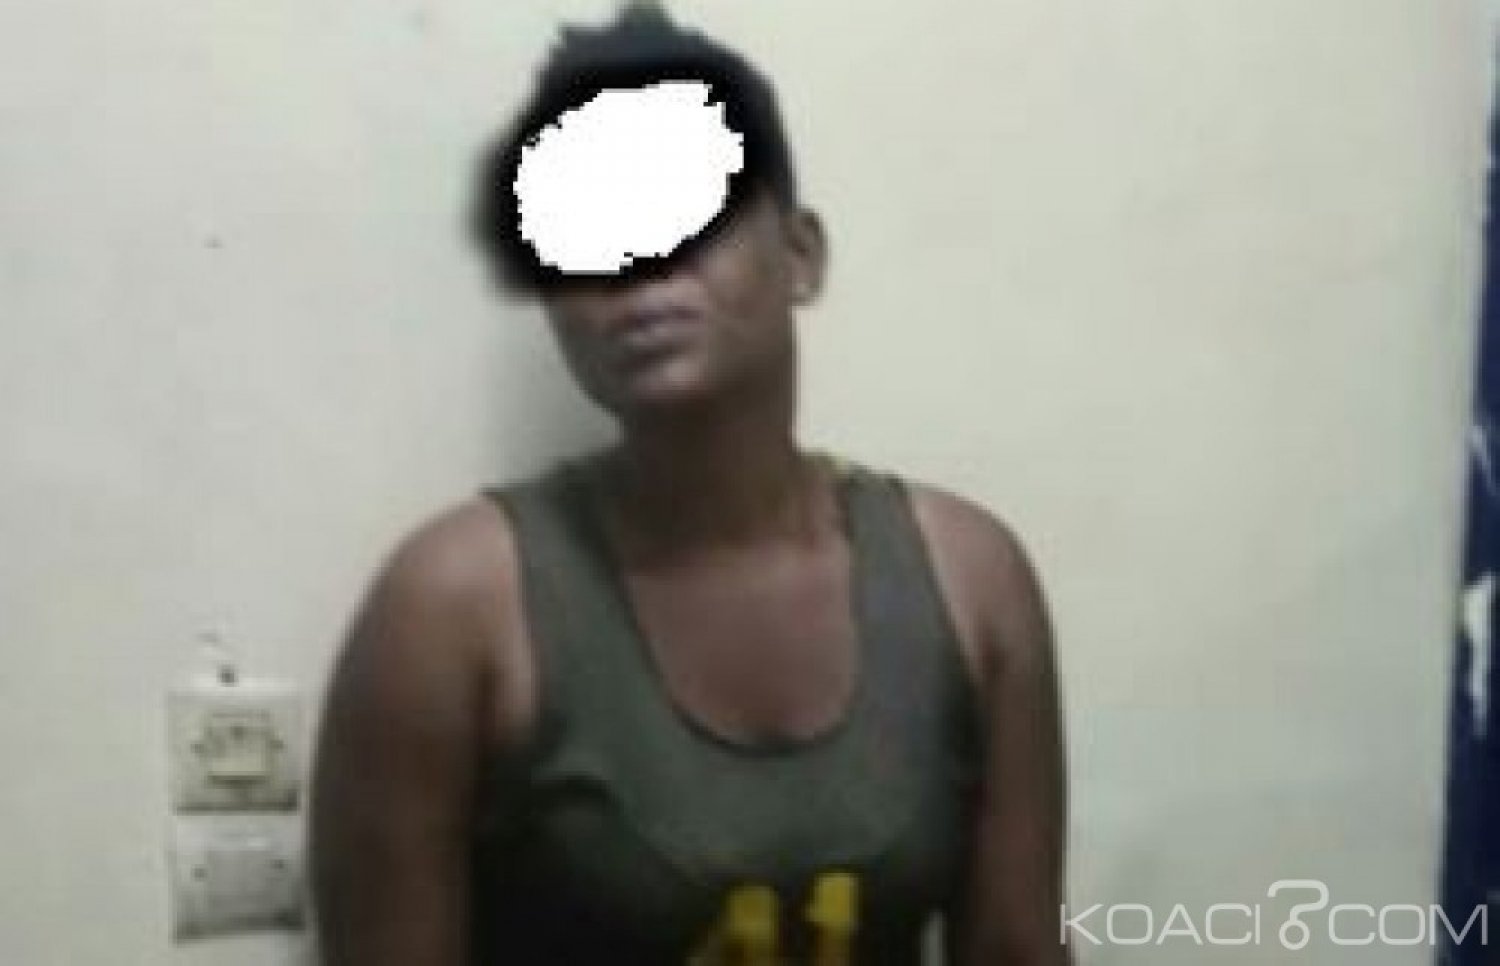 Côte d'Ivoire : Une femme suspectée d'exploiter des enfants mineurs interpellée